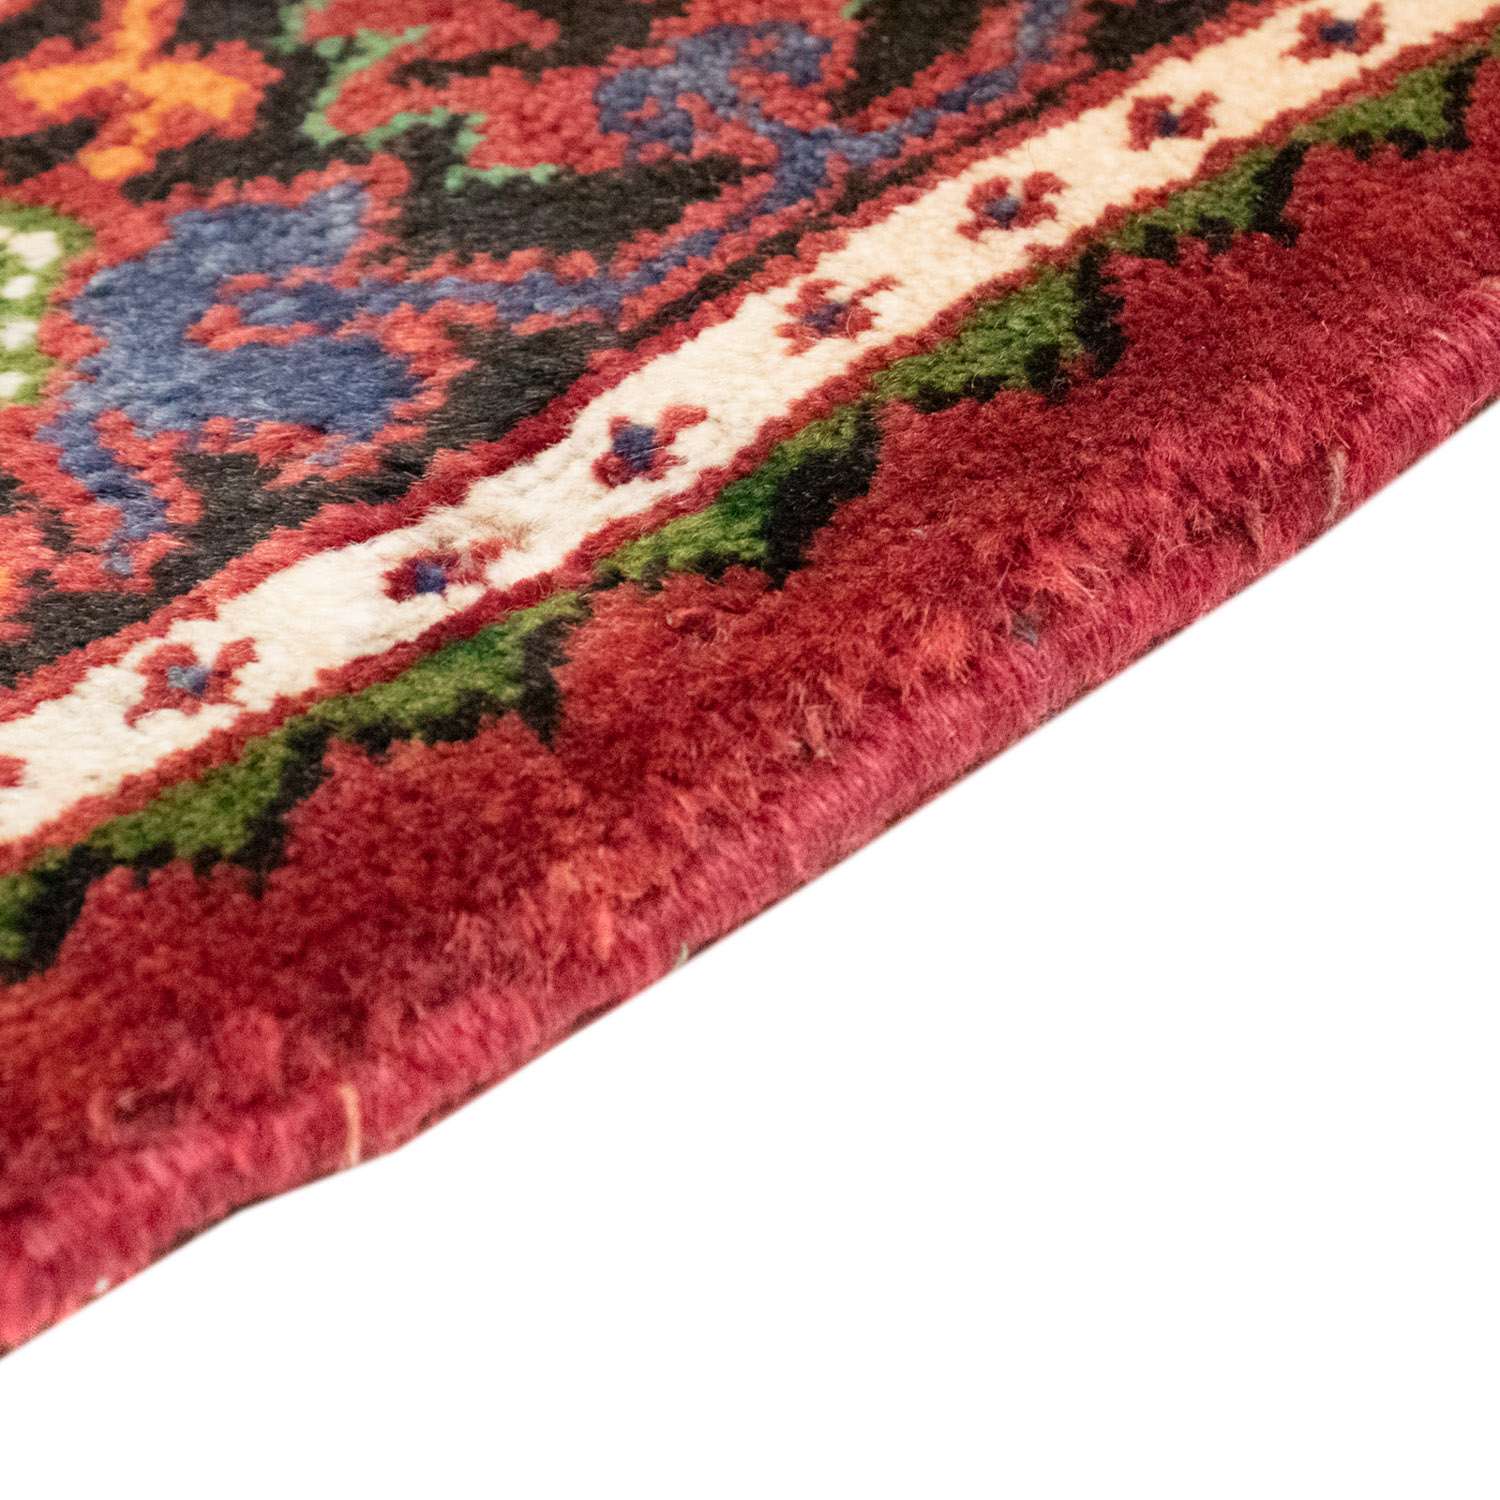 Perský koberec - Nomádský - 205 x 138 cm - tmavě červená